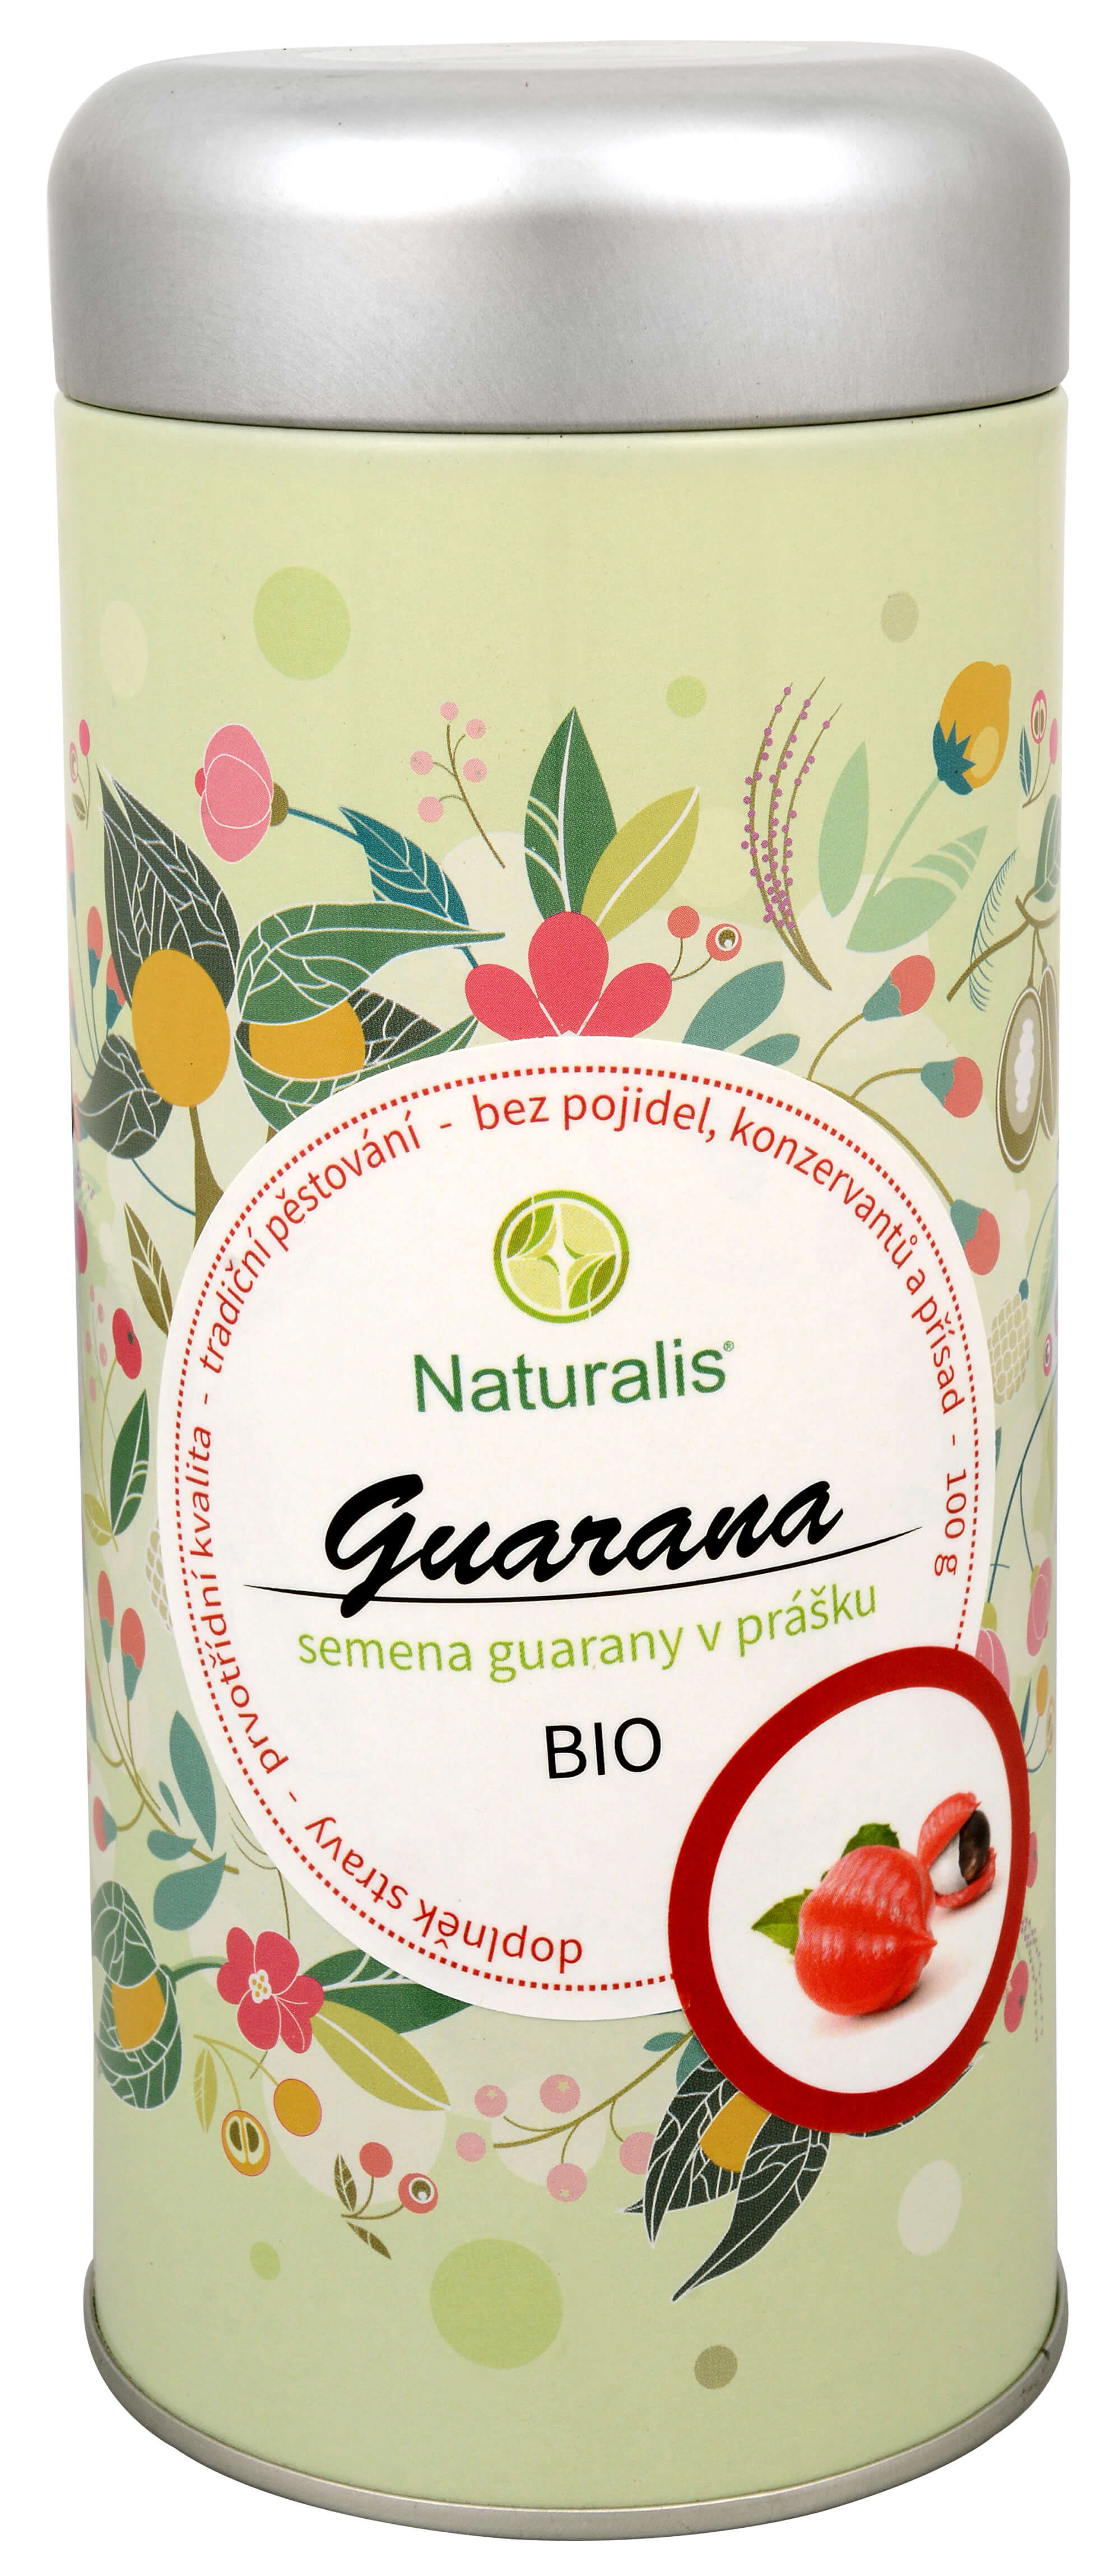 Naturalis Guarana Naturalis 100 g + 2 měsíce na vrácení zboží